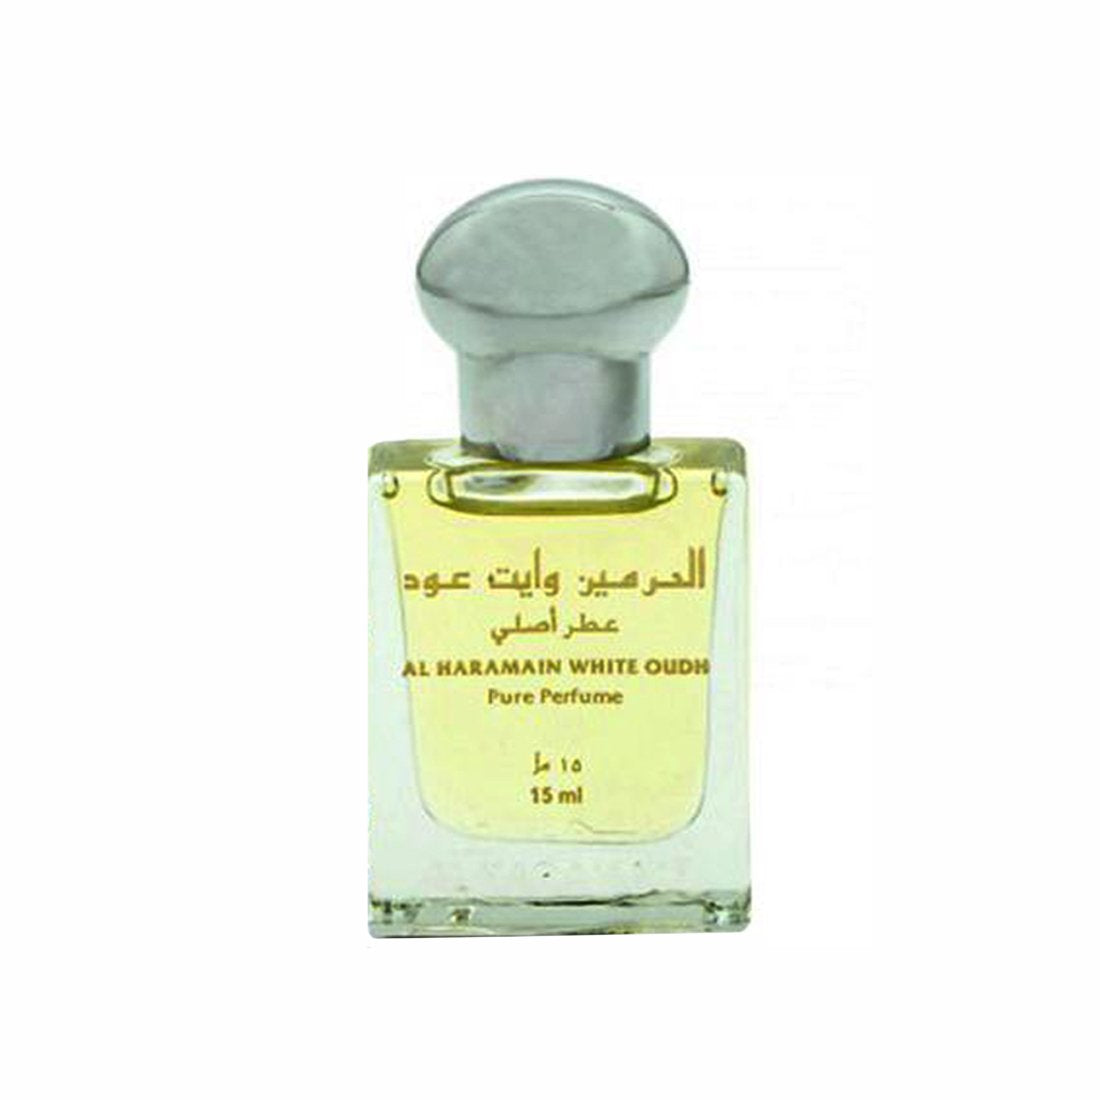 Al Haramain White Oudh Attar - 15 ml